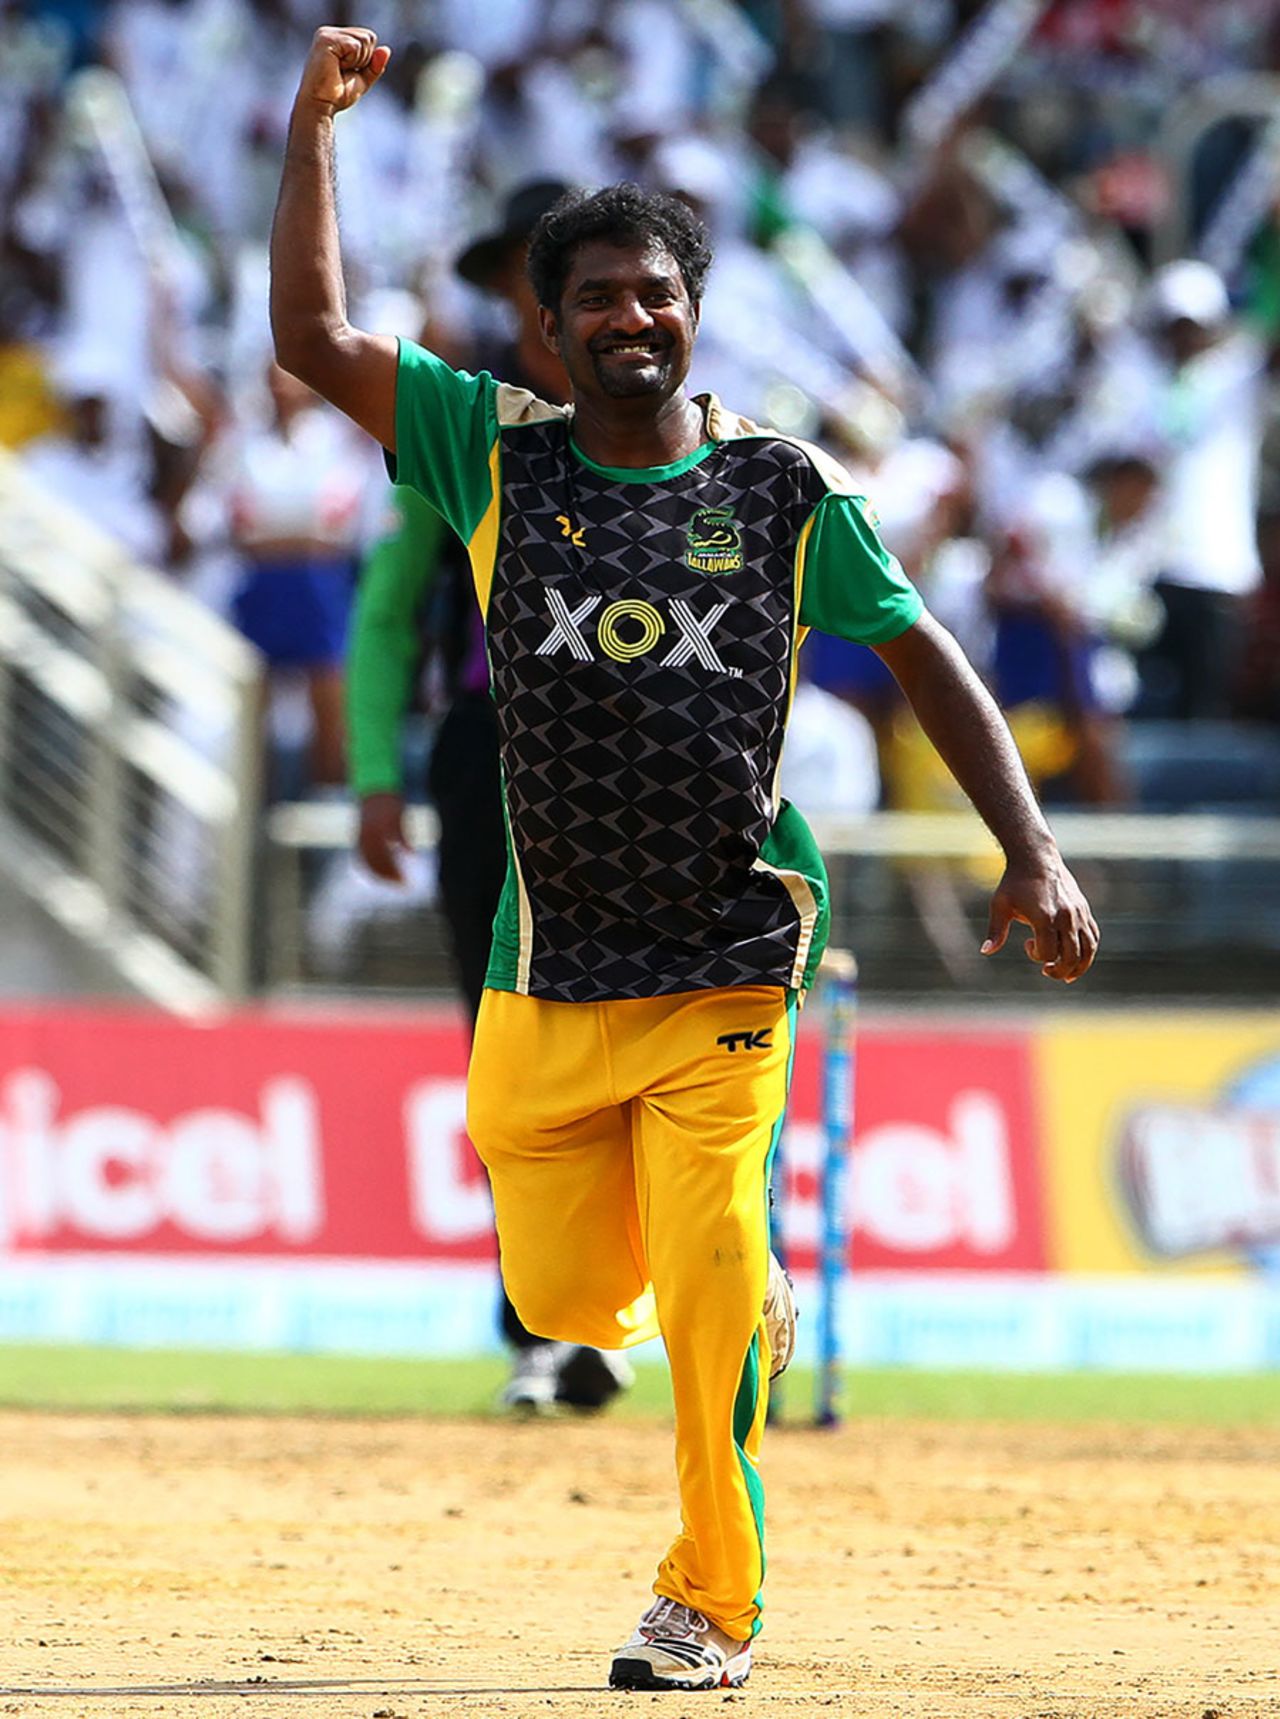 Muttiah Muralitharan celebrates a wicket, Jamaica Tallawahs v Barbados Tridents, Caribbean Premier League 2013, Jamaica, August 17, 2013